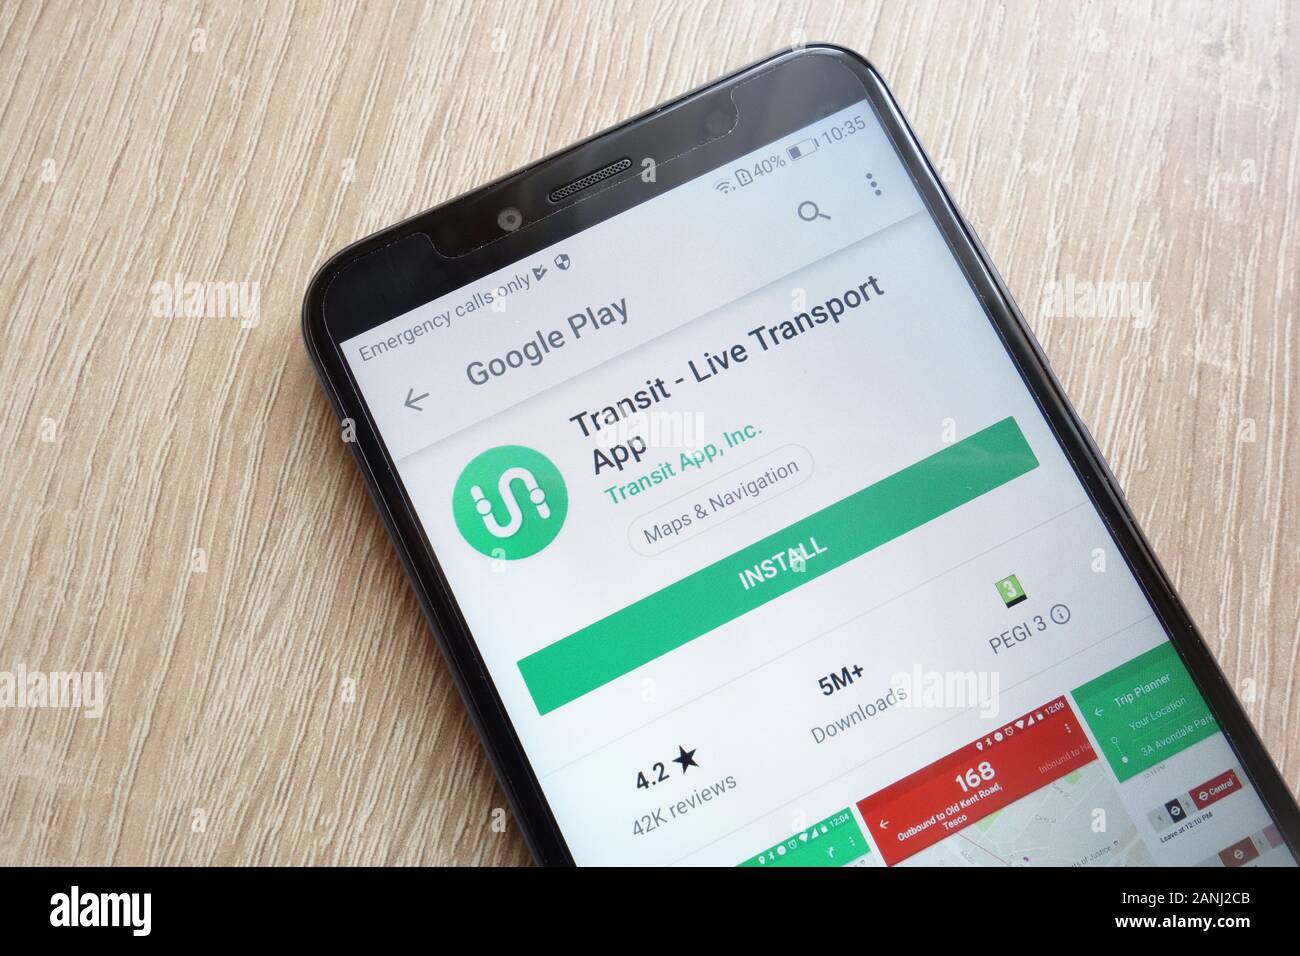 Transit - aplicación de transporte en directo en el sitio web de Google Play Store que se muestra en el smartphone Huawei Y6 2018 Foto de stock